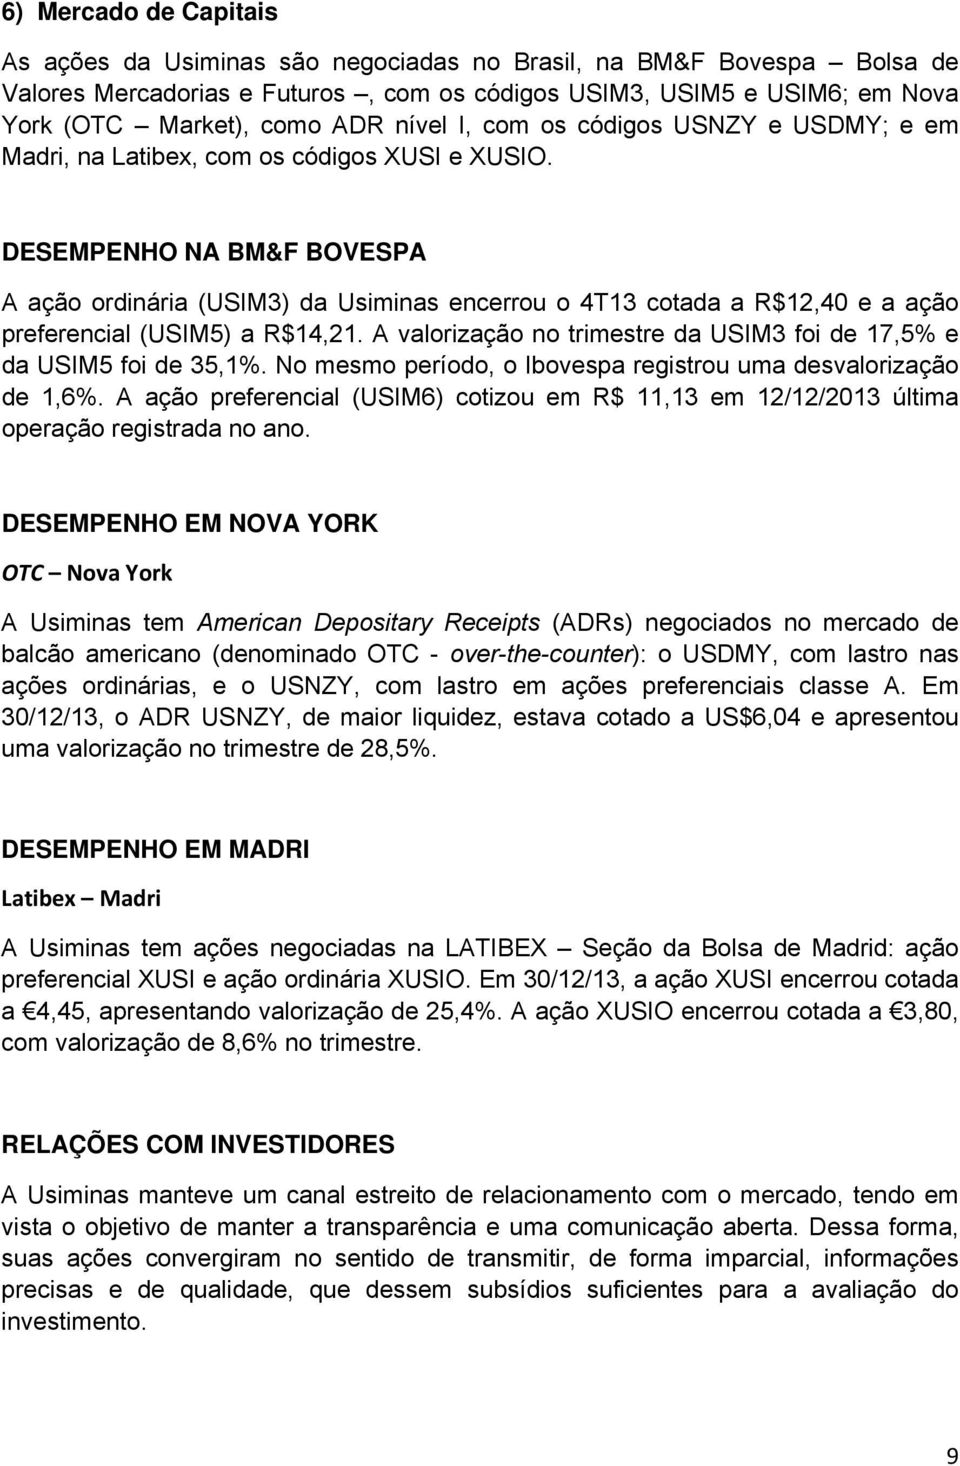 DESEMPENHO NA BM&F BOVESPA A ação ordinária (USIM3) da Usiminas encerrou o 4T13 cotada a R$12,40 e a ação preferencial (USIM5) a R$14,21.